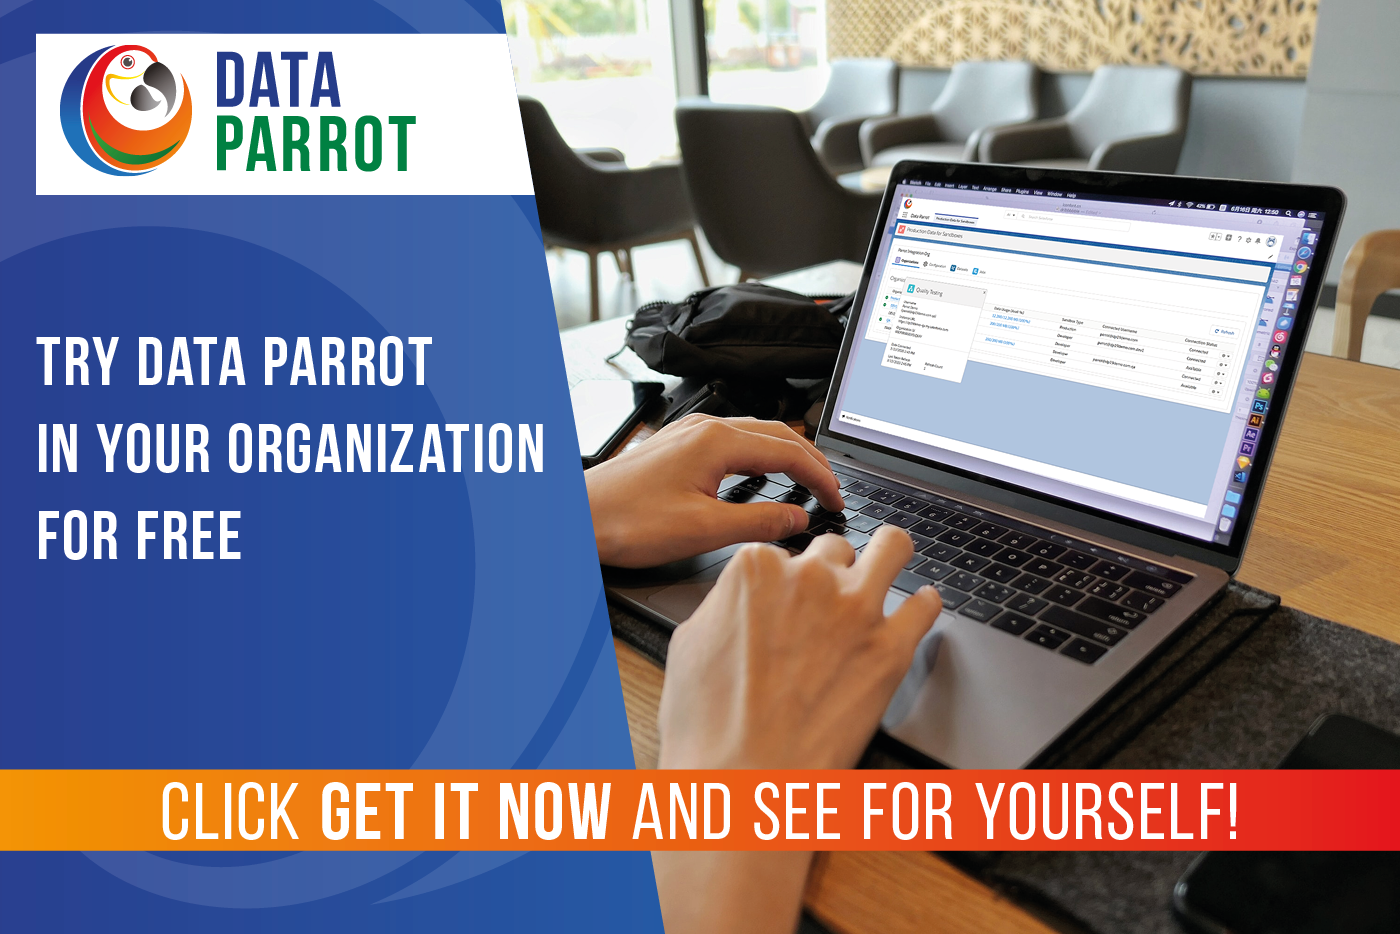 Data Parrot